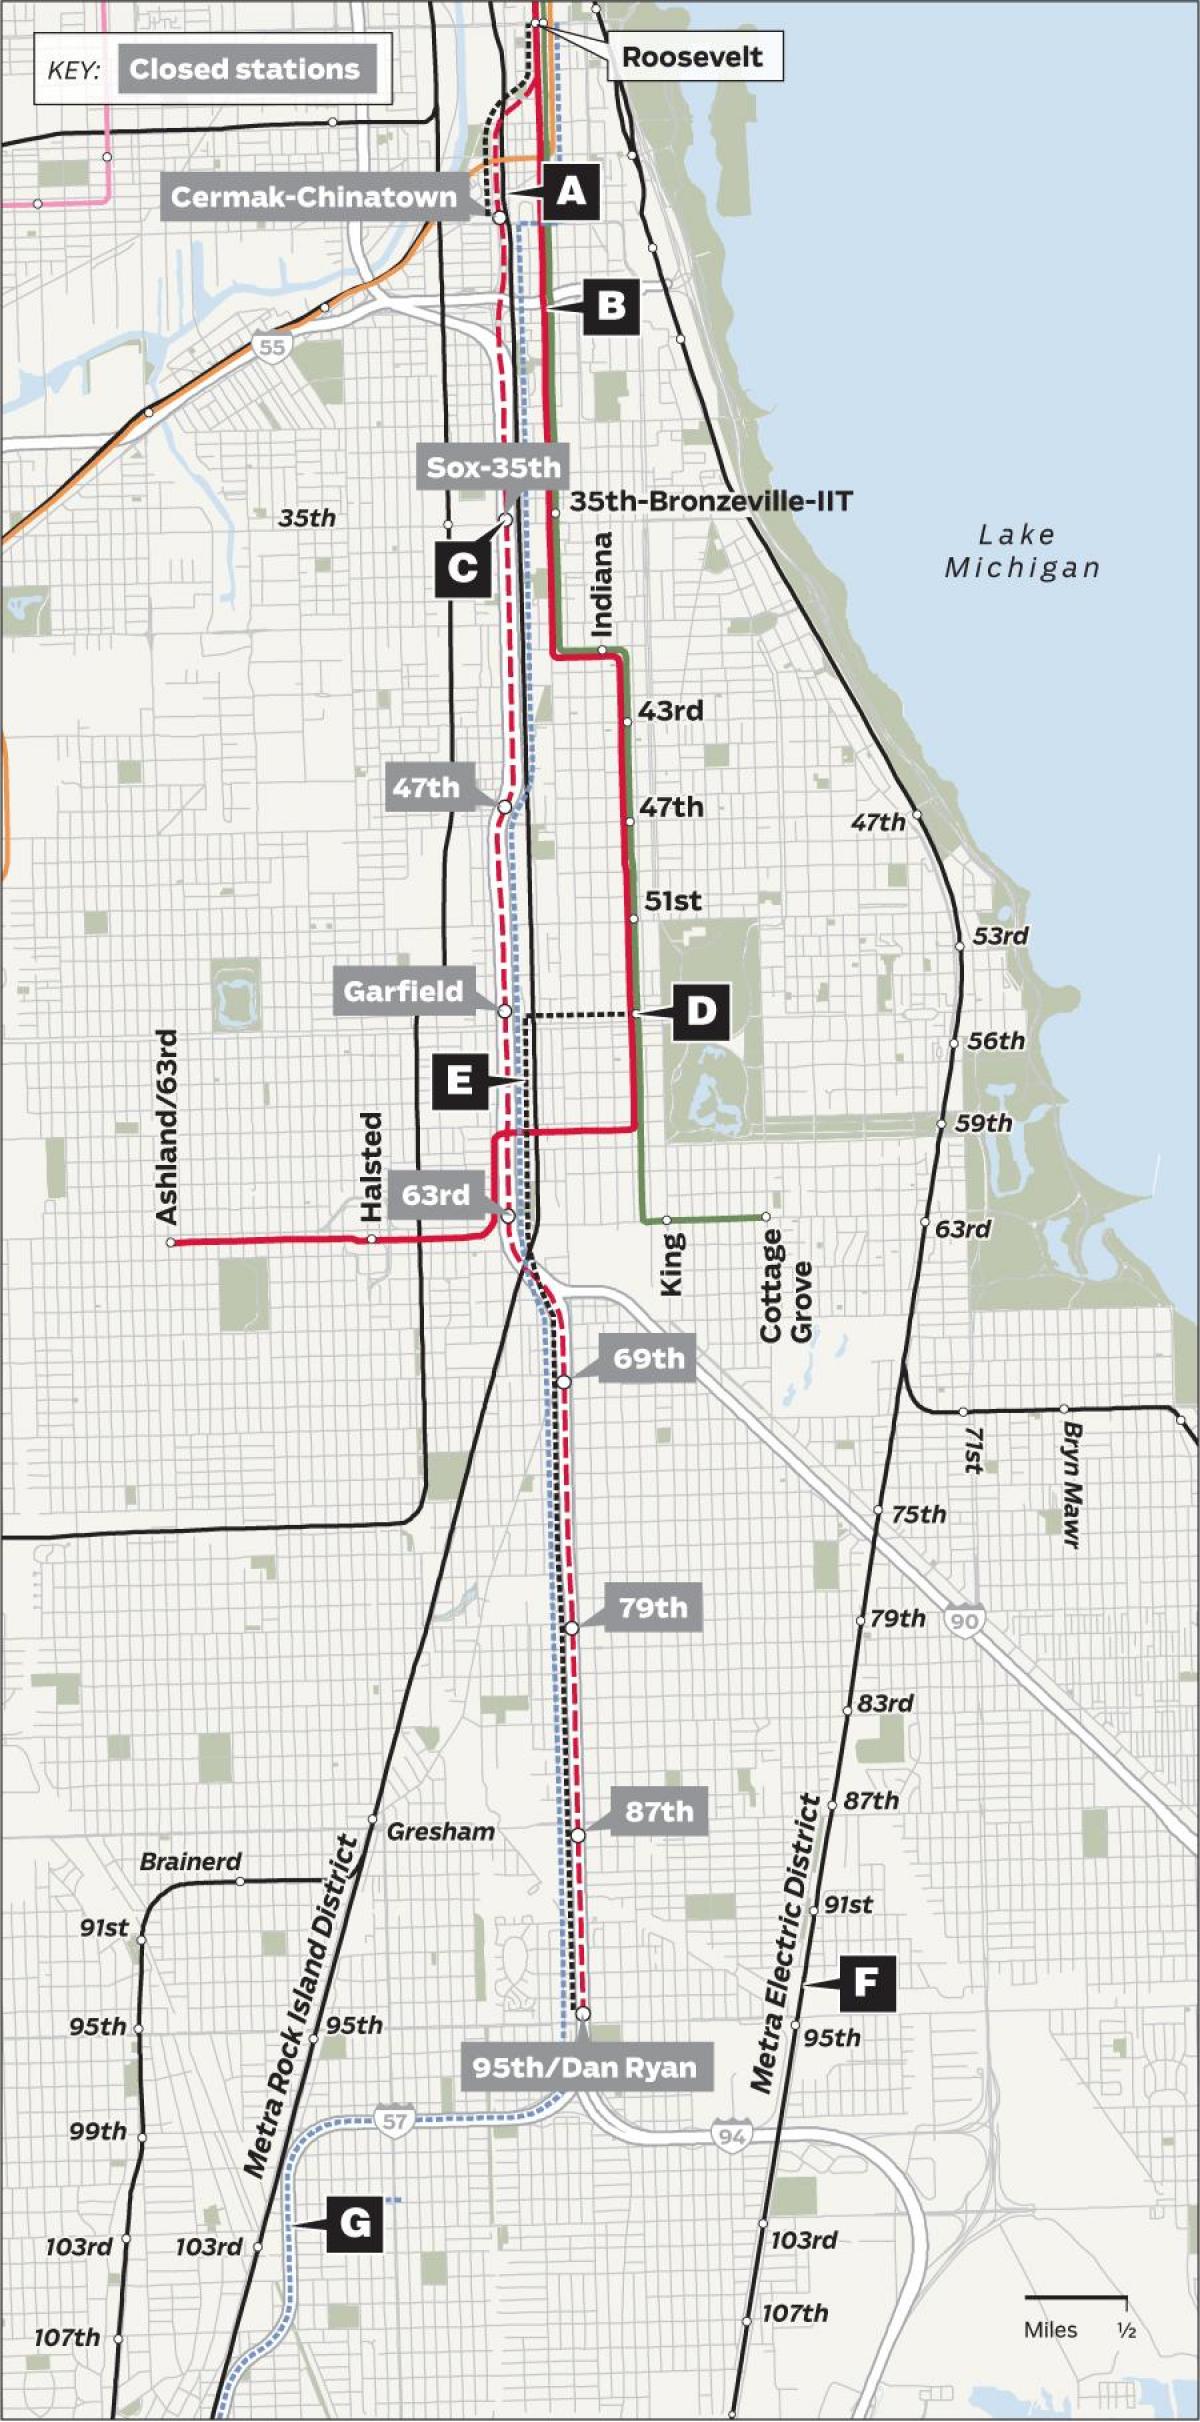 redline Chicago mapě